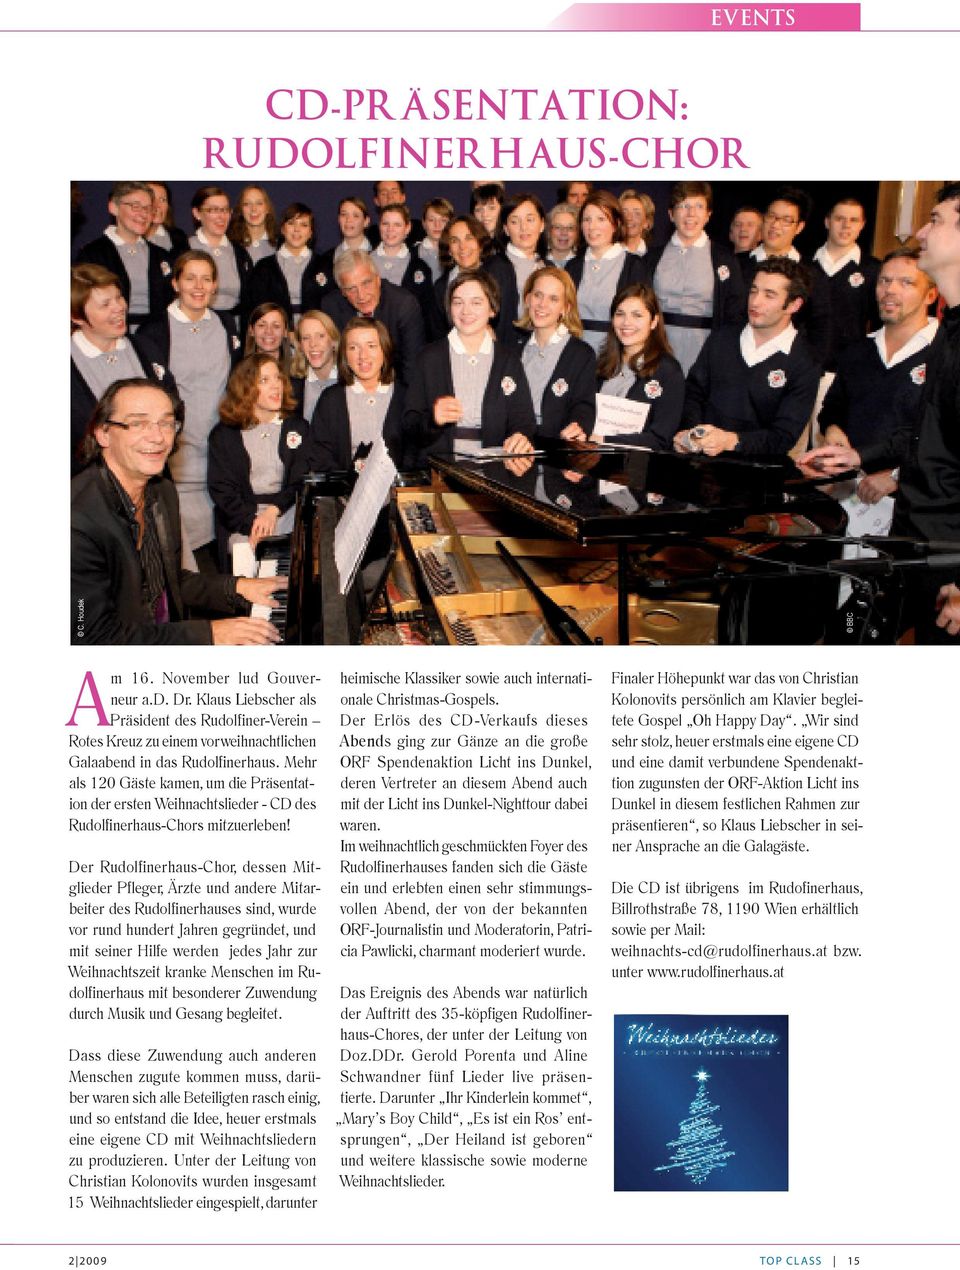 Mehr als 120 Gäste kamen, um die Präsentation der ersten Weihnachtslieder - CD des Rudolfinerhaus-Chors mitzuerleben!